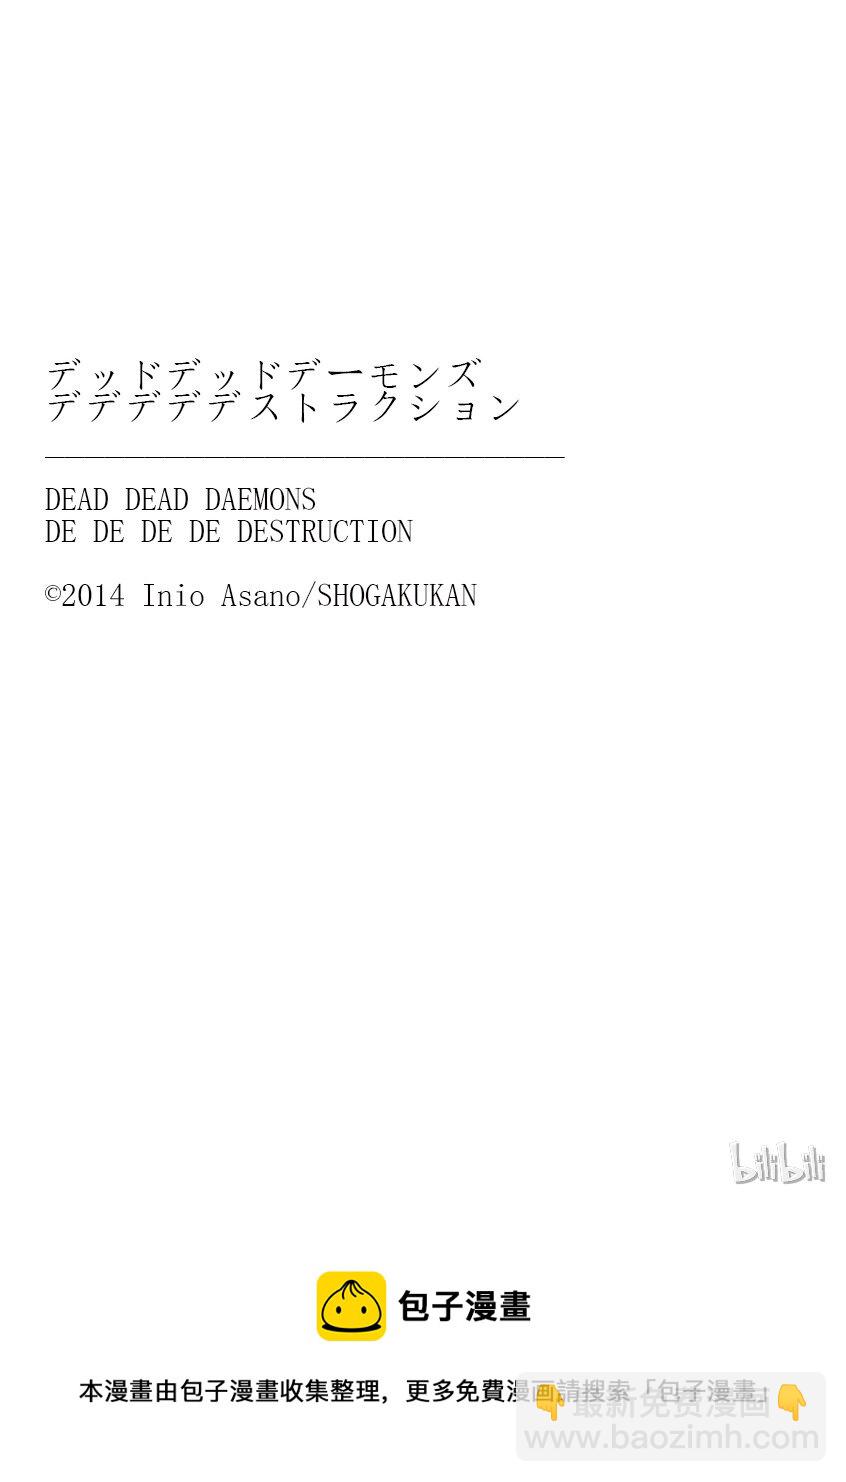 惡魔的破壞 DEAD DEAD DEMON'S DEDEDEDE DESTRUCTION - 006 - 3